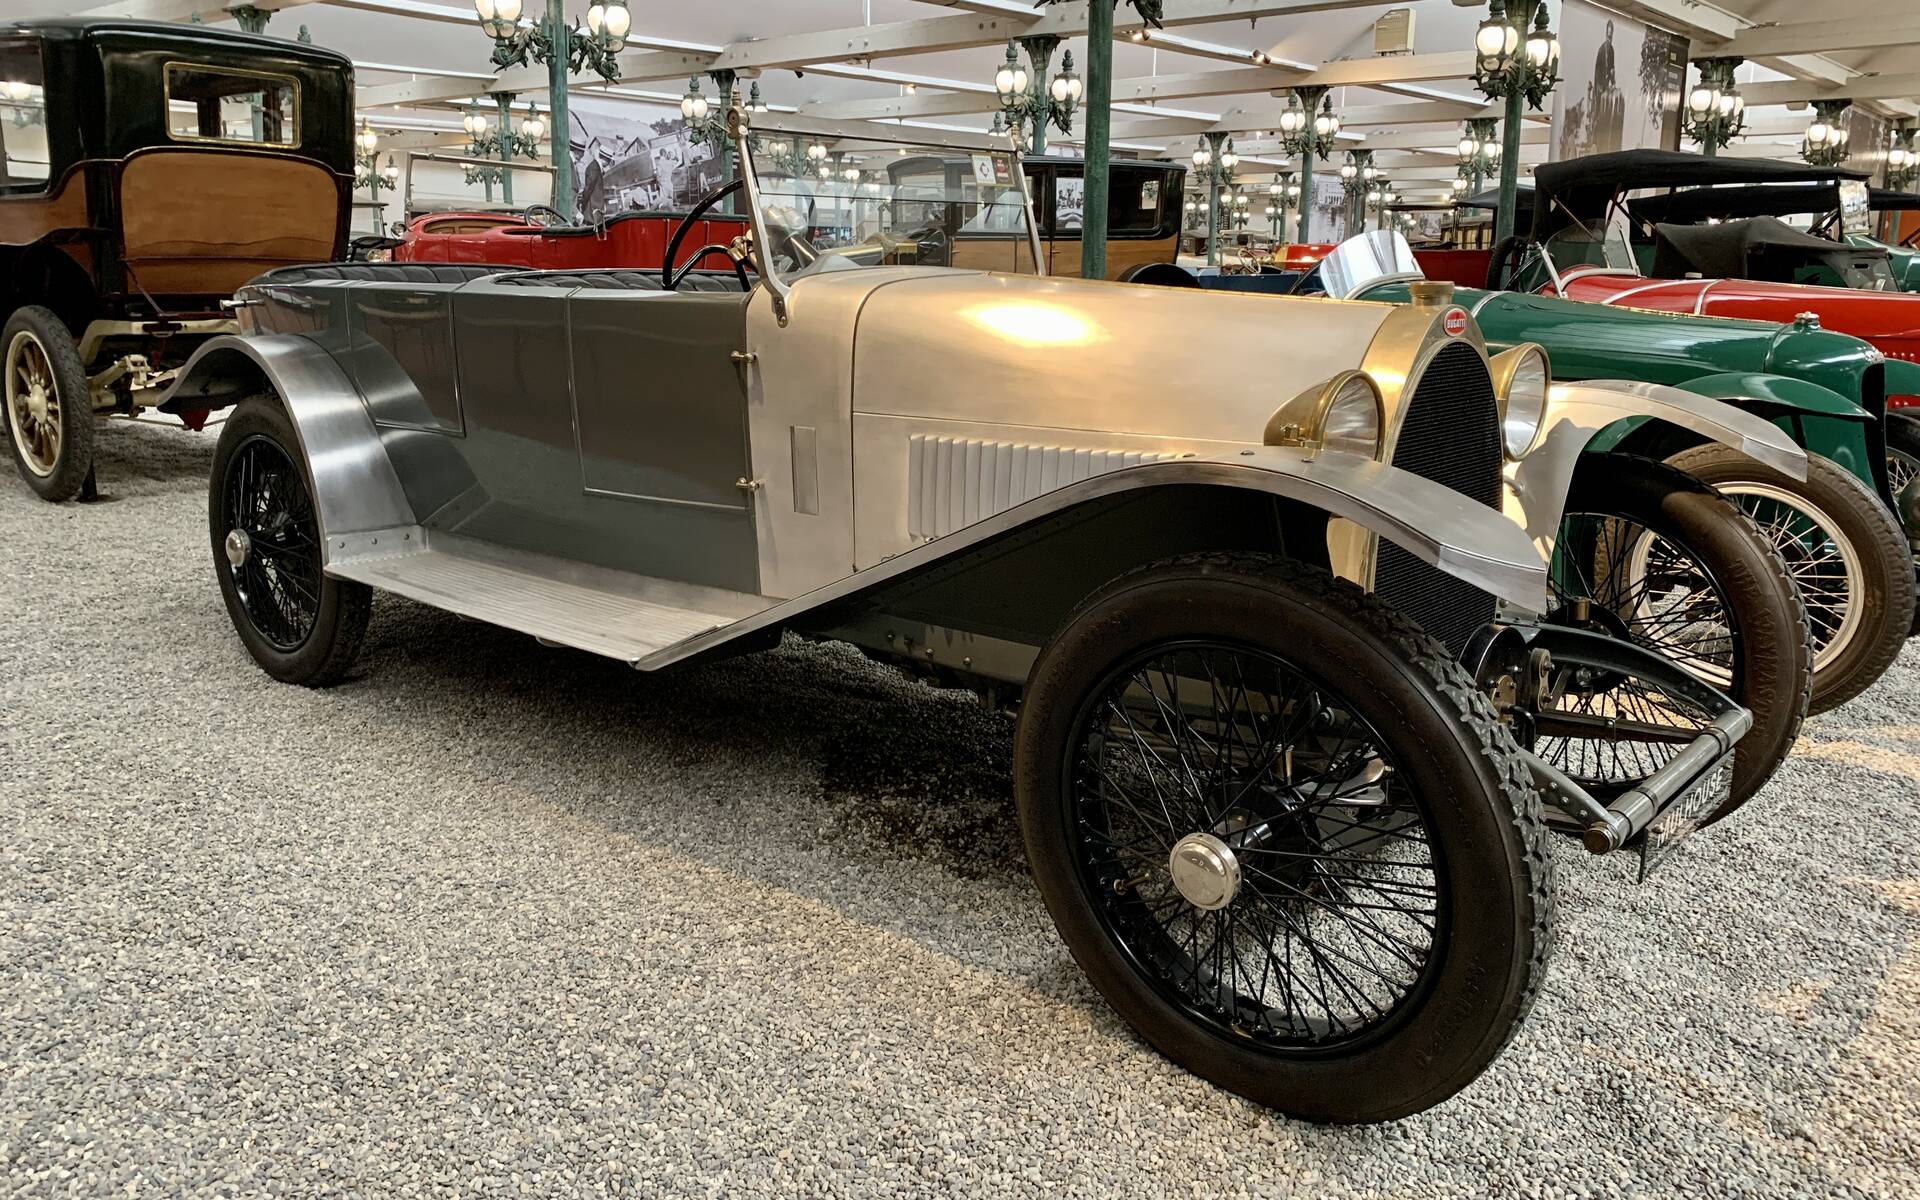 En photos : une centaine de Bugatti réunies dans un même musée 503056-en-photos-des-dizaines-de-bugatti-reunies-dans-un-meme-musee